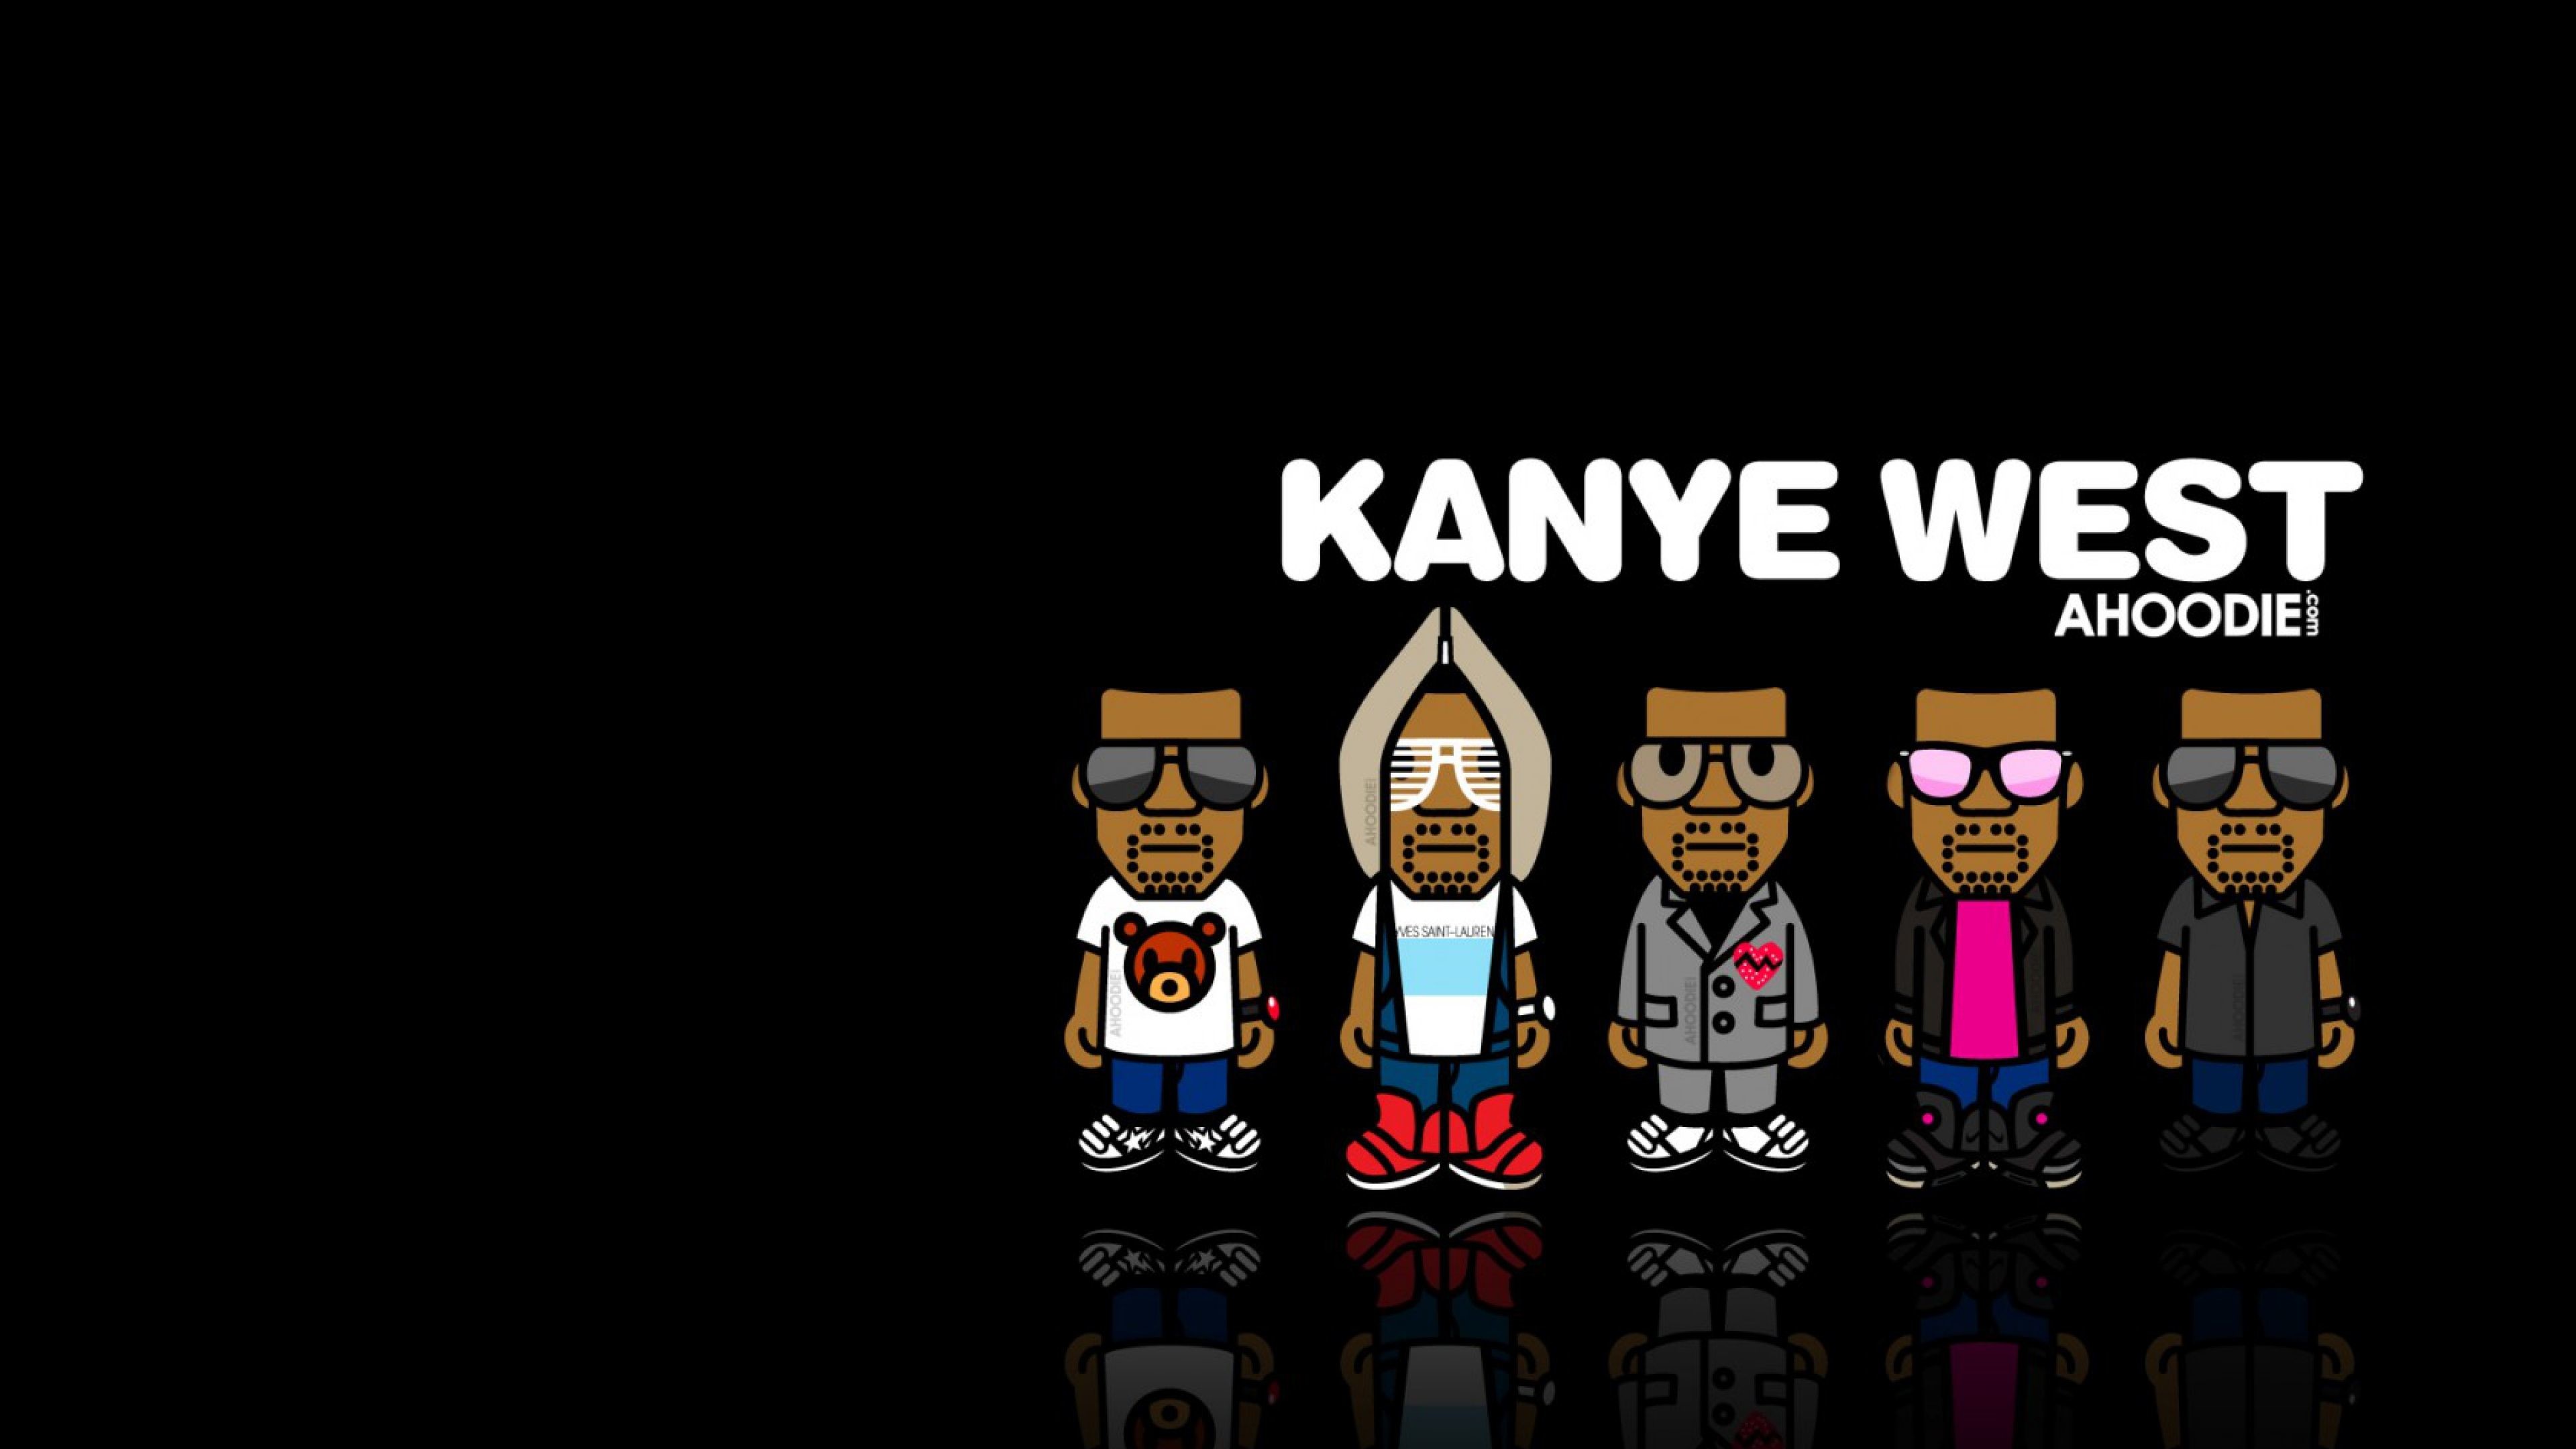 Download Wallpaper Kanye west, Music, Image, Hip hop 4K